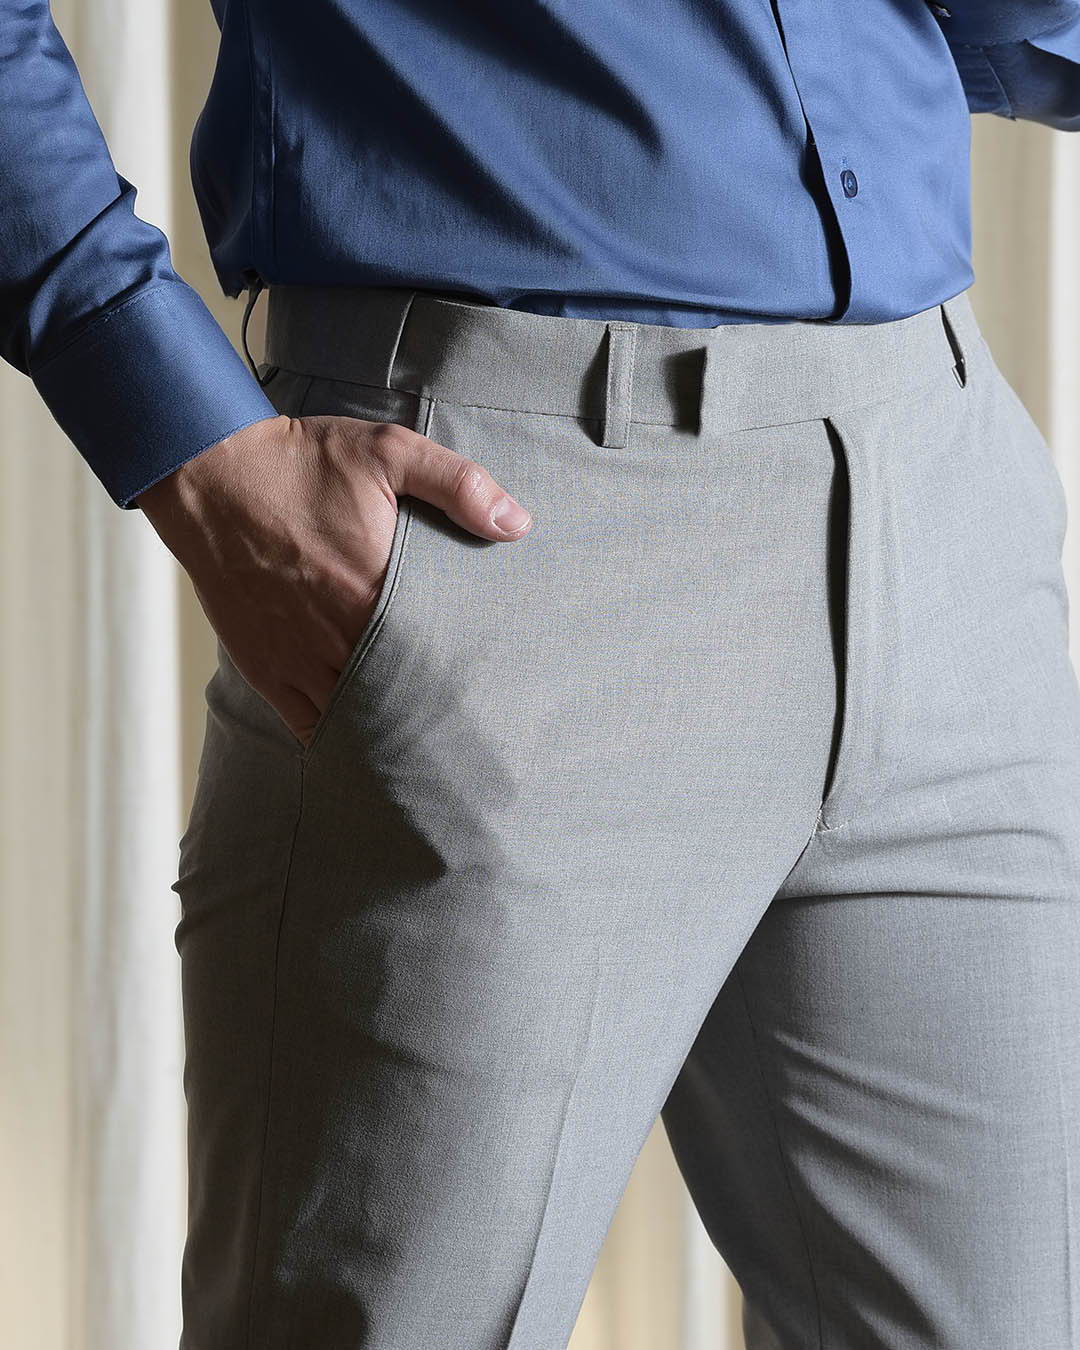 fcity.in - Elanhood Formal Pant For Mens Cream Trouser For Men / Fashionable